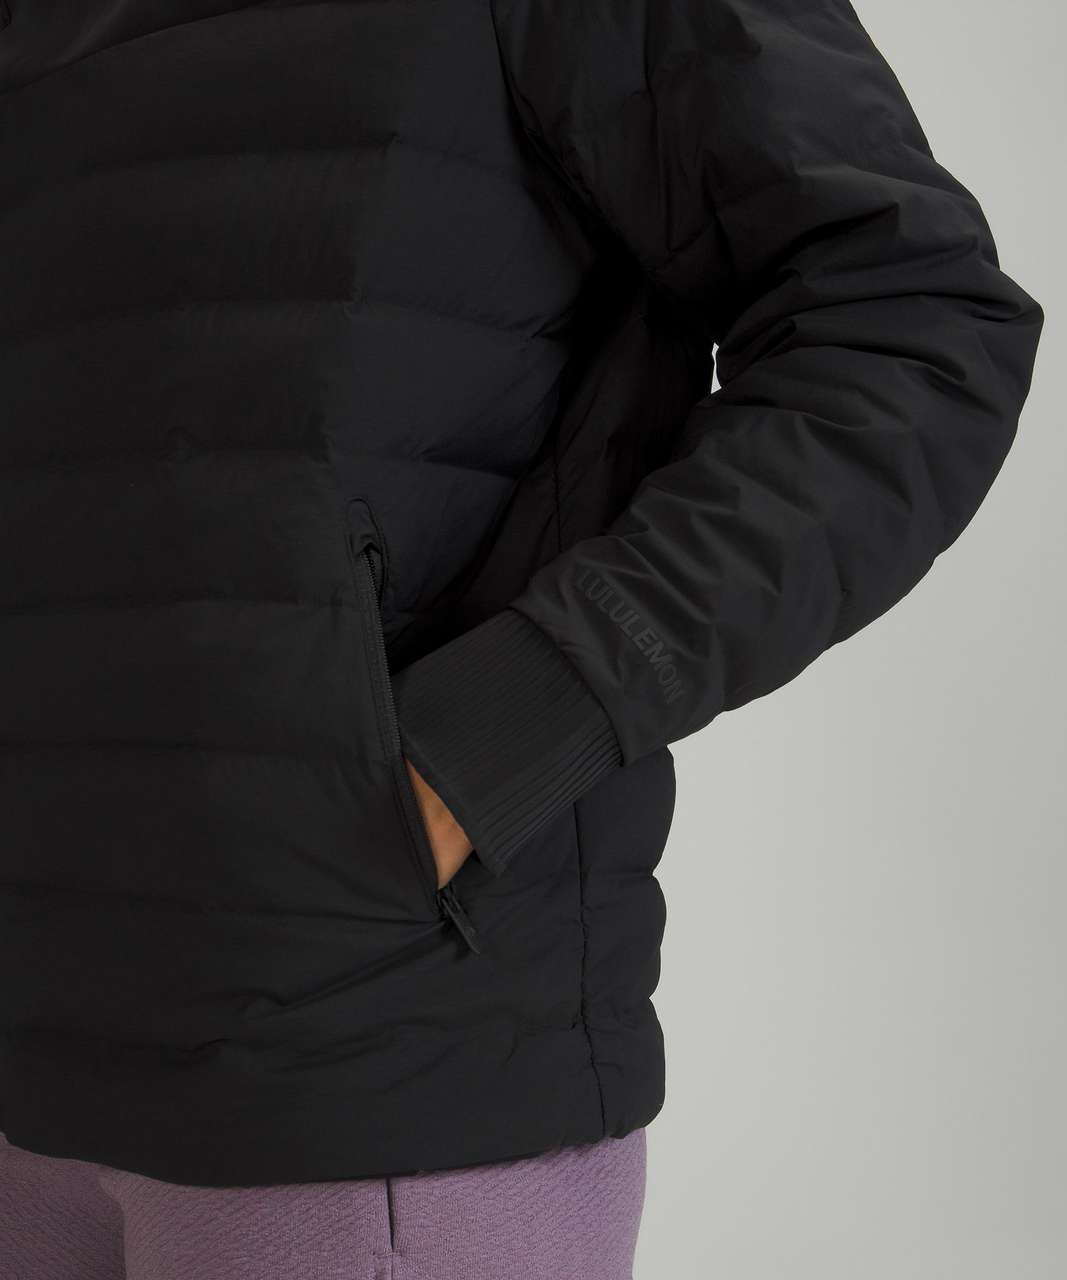 Lululemon Twist Back-to-Front Pullover Black Size 8 LW3ER5S NWT $199  ⚫️👀🍋⭐️